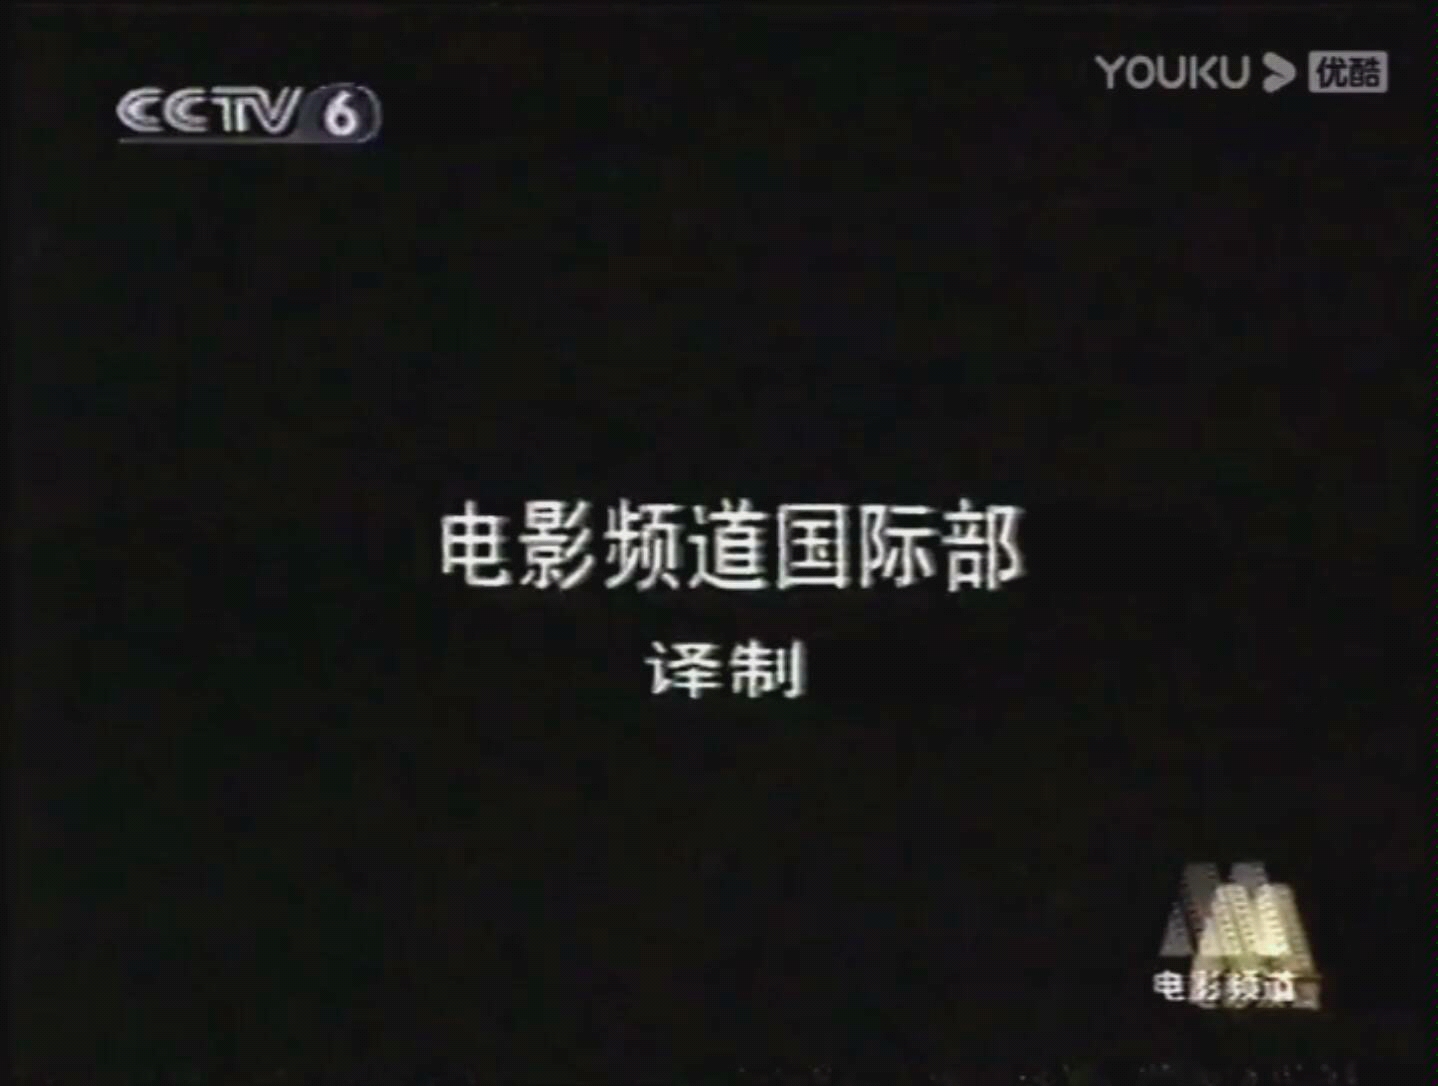 2010 CCTV6 广告图片